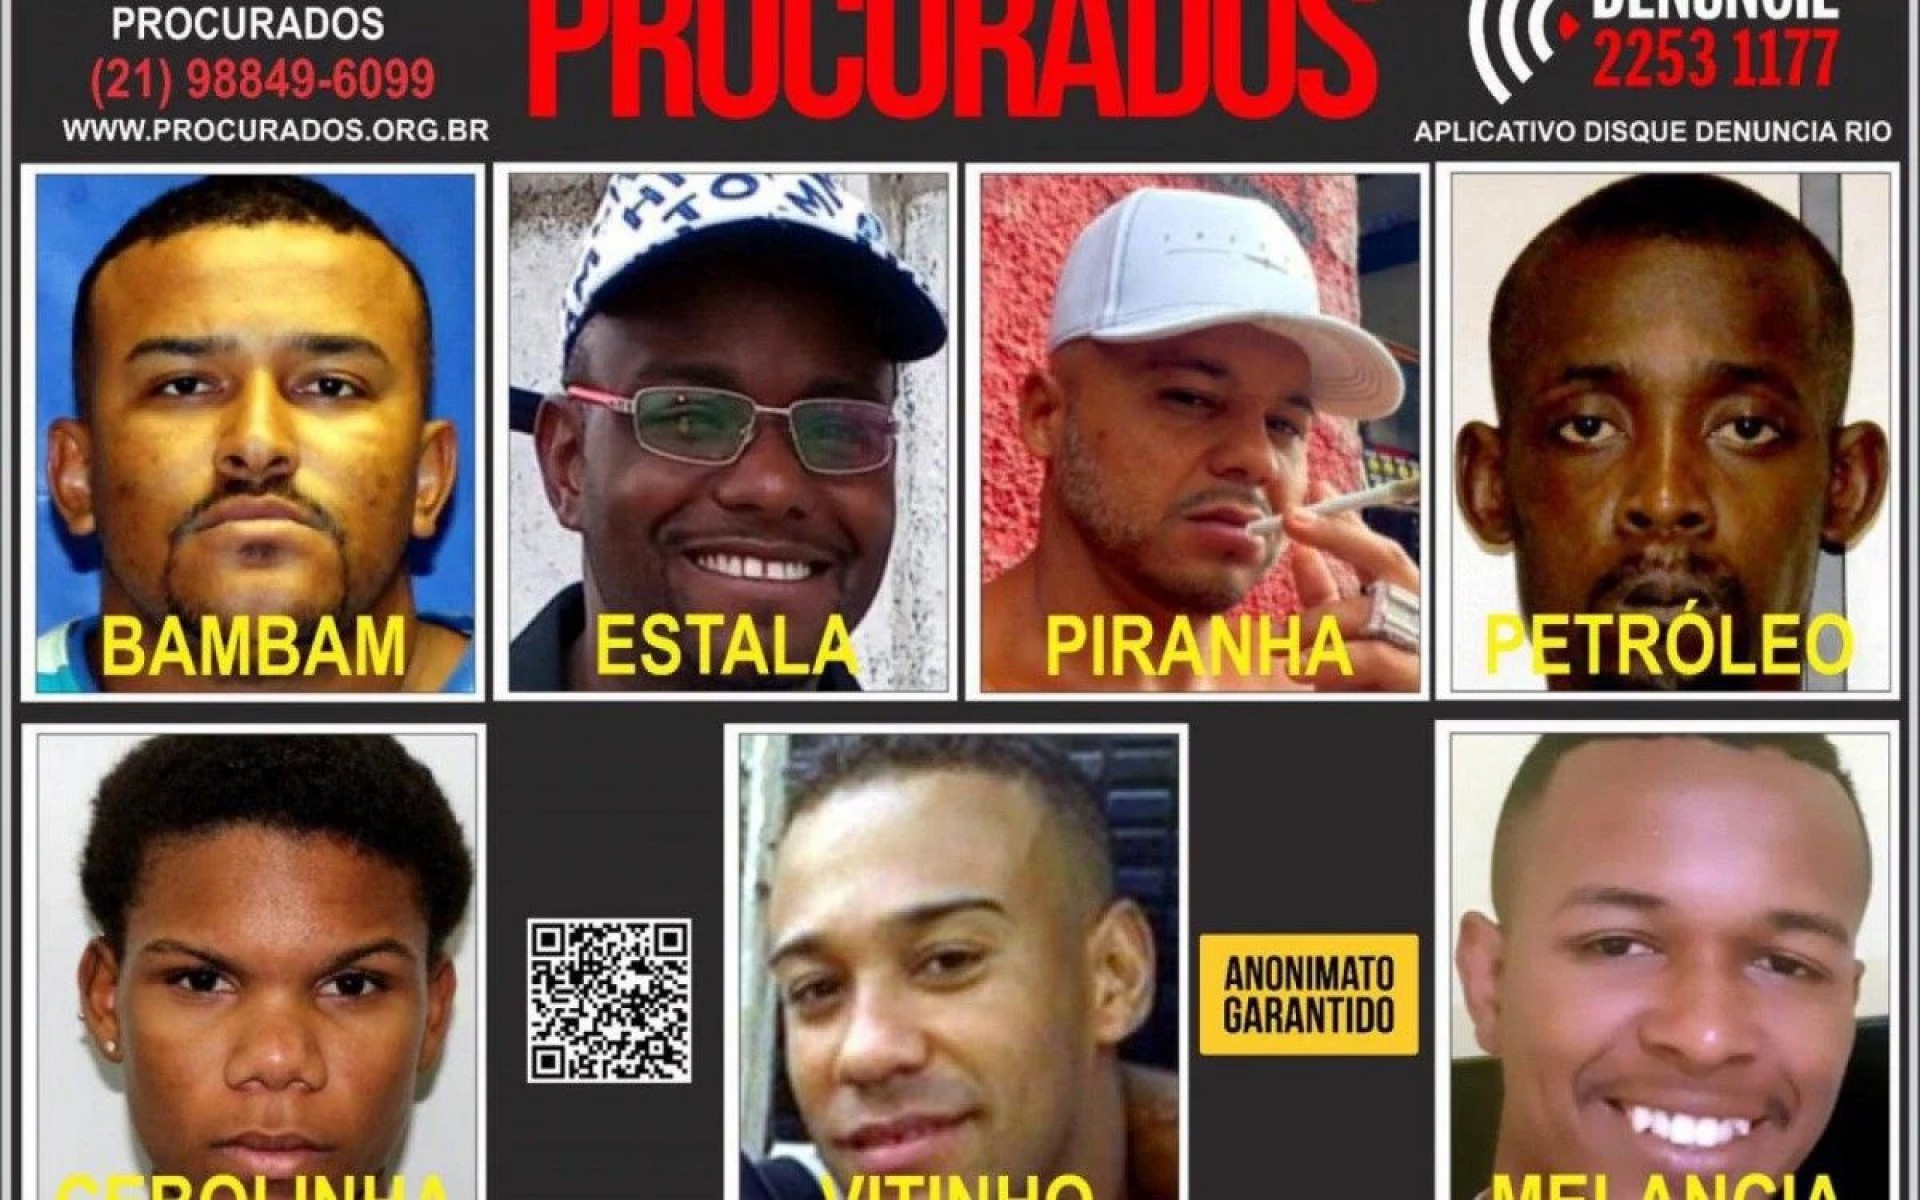 Portal dos Procurados divulgou cartaz no ano passado com os suspeitos por tortura contra homem acusado injustamente - Divulgação